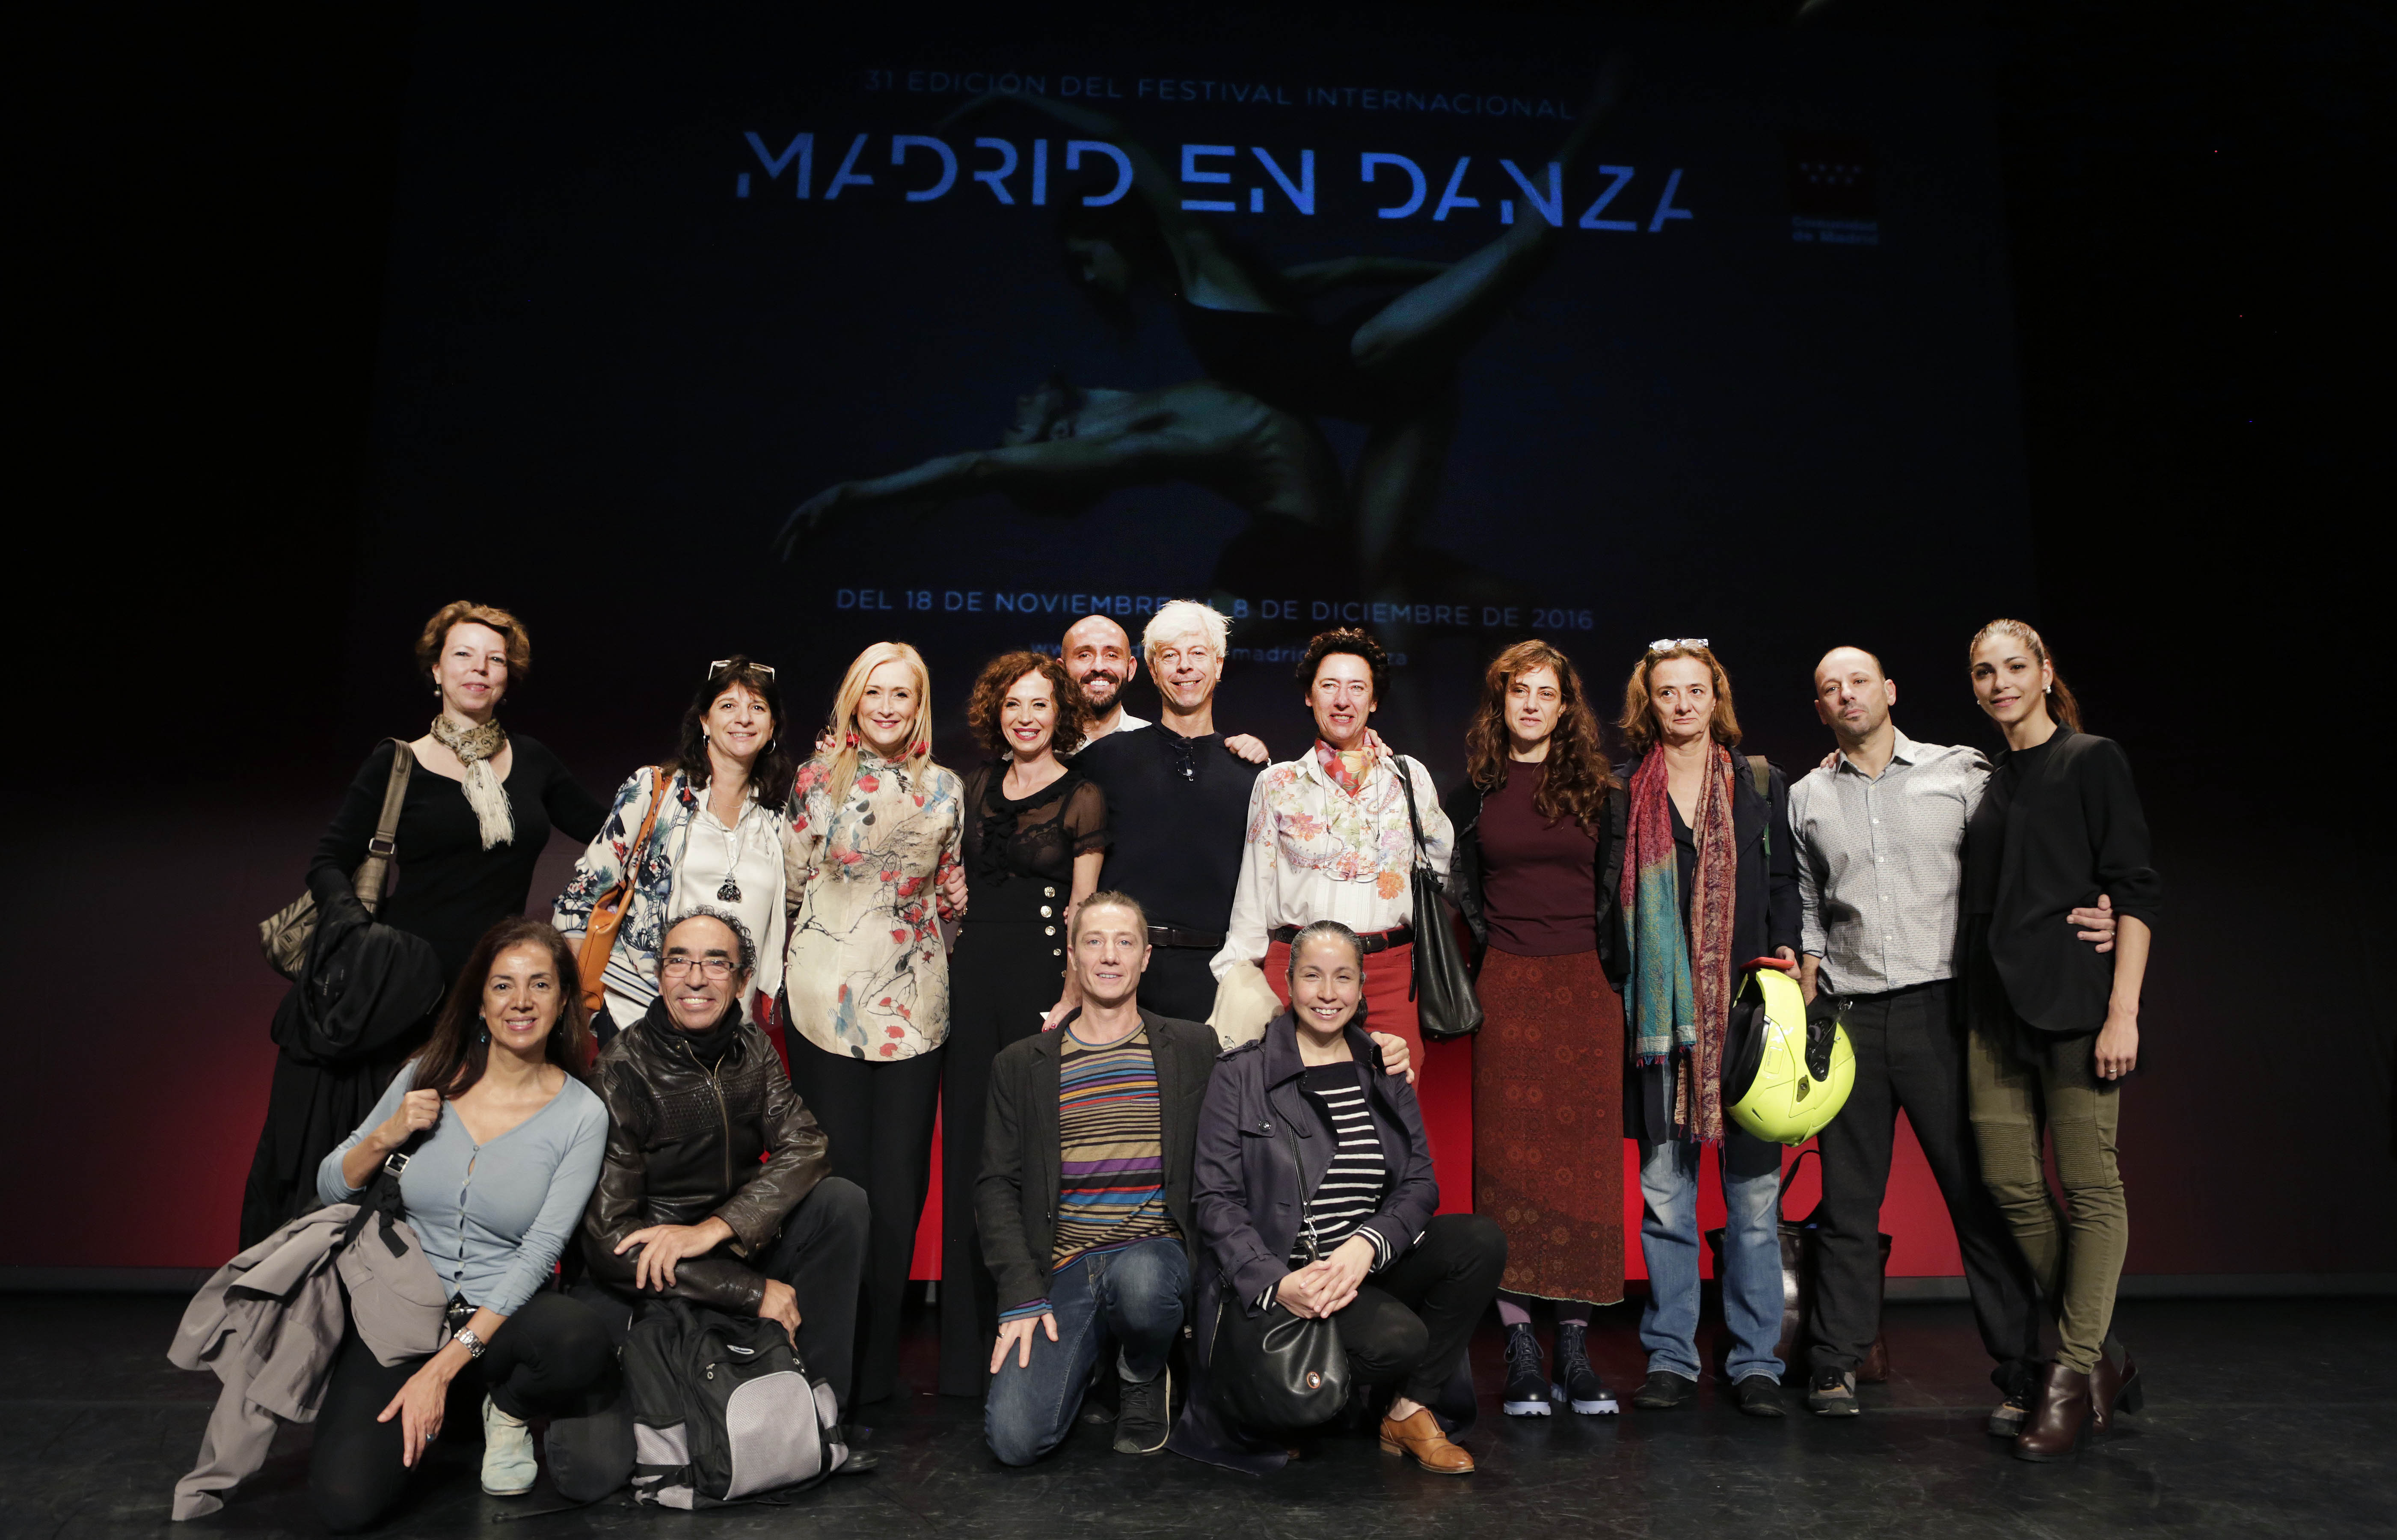 Presentación de la XXXI Edición del Festival Internacional Madrid en Danza 2016